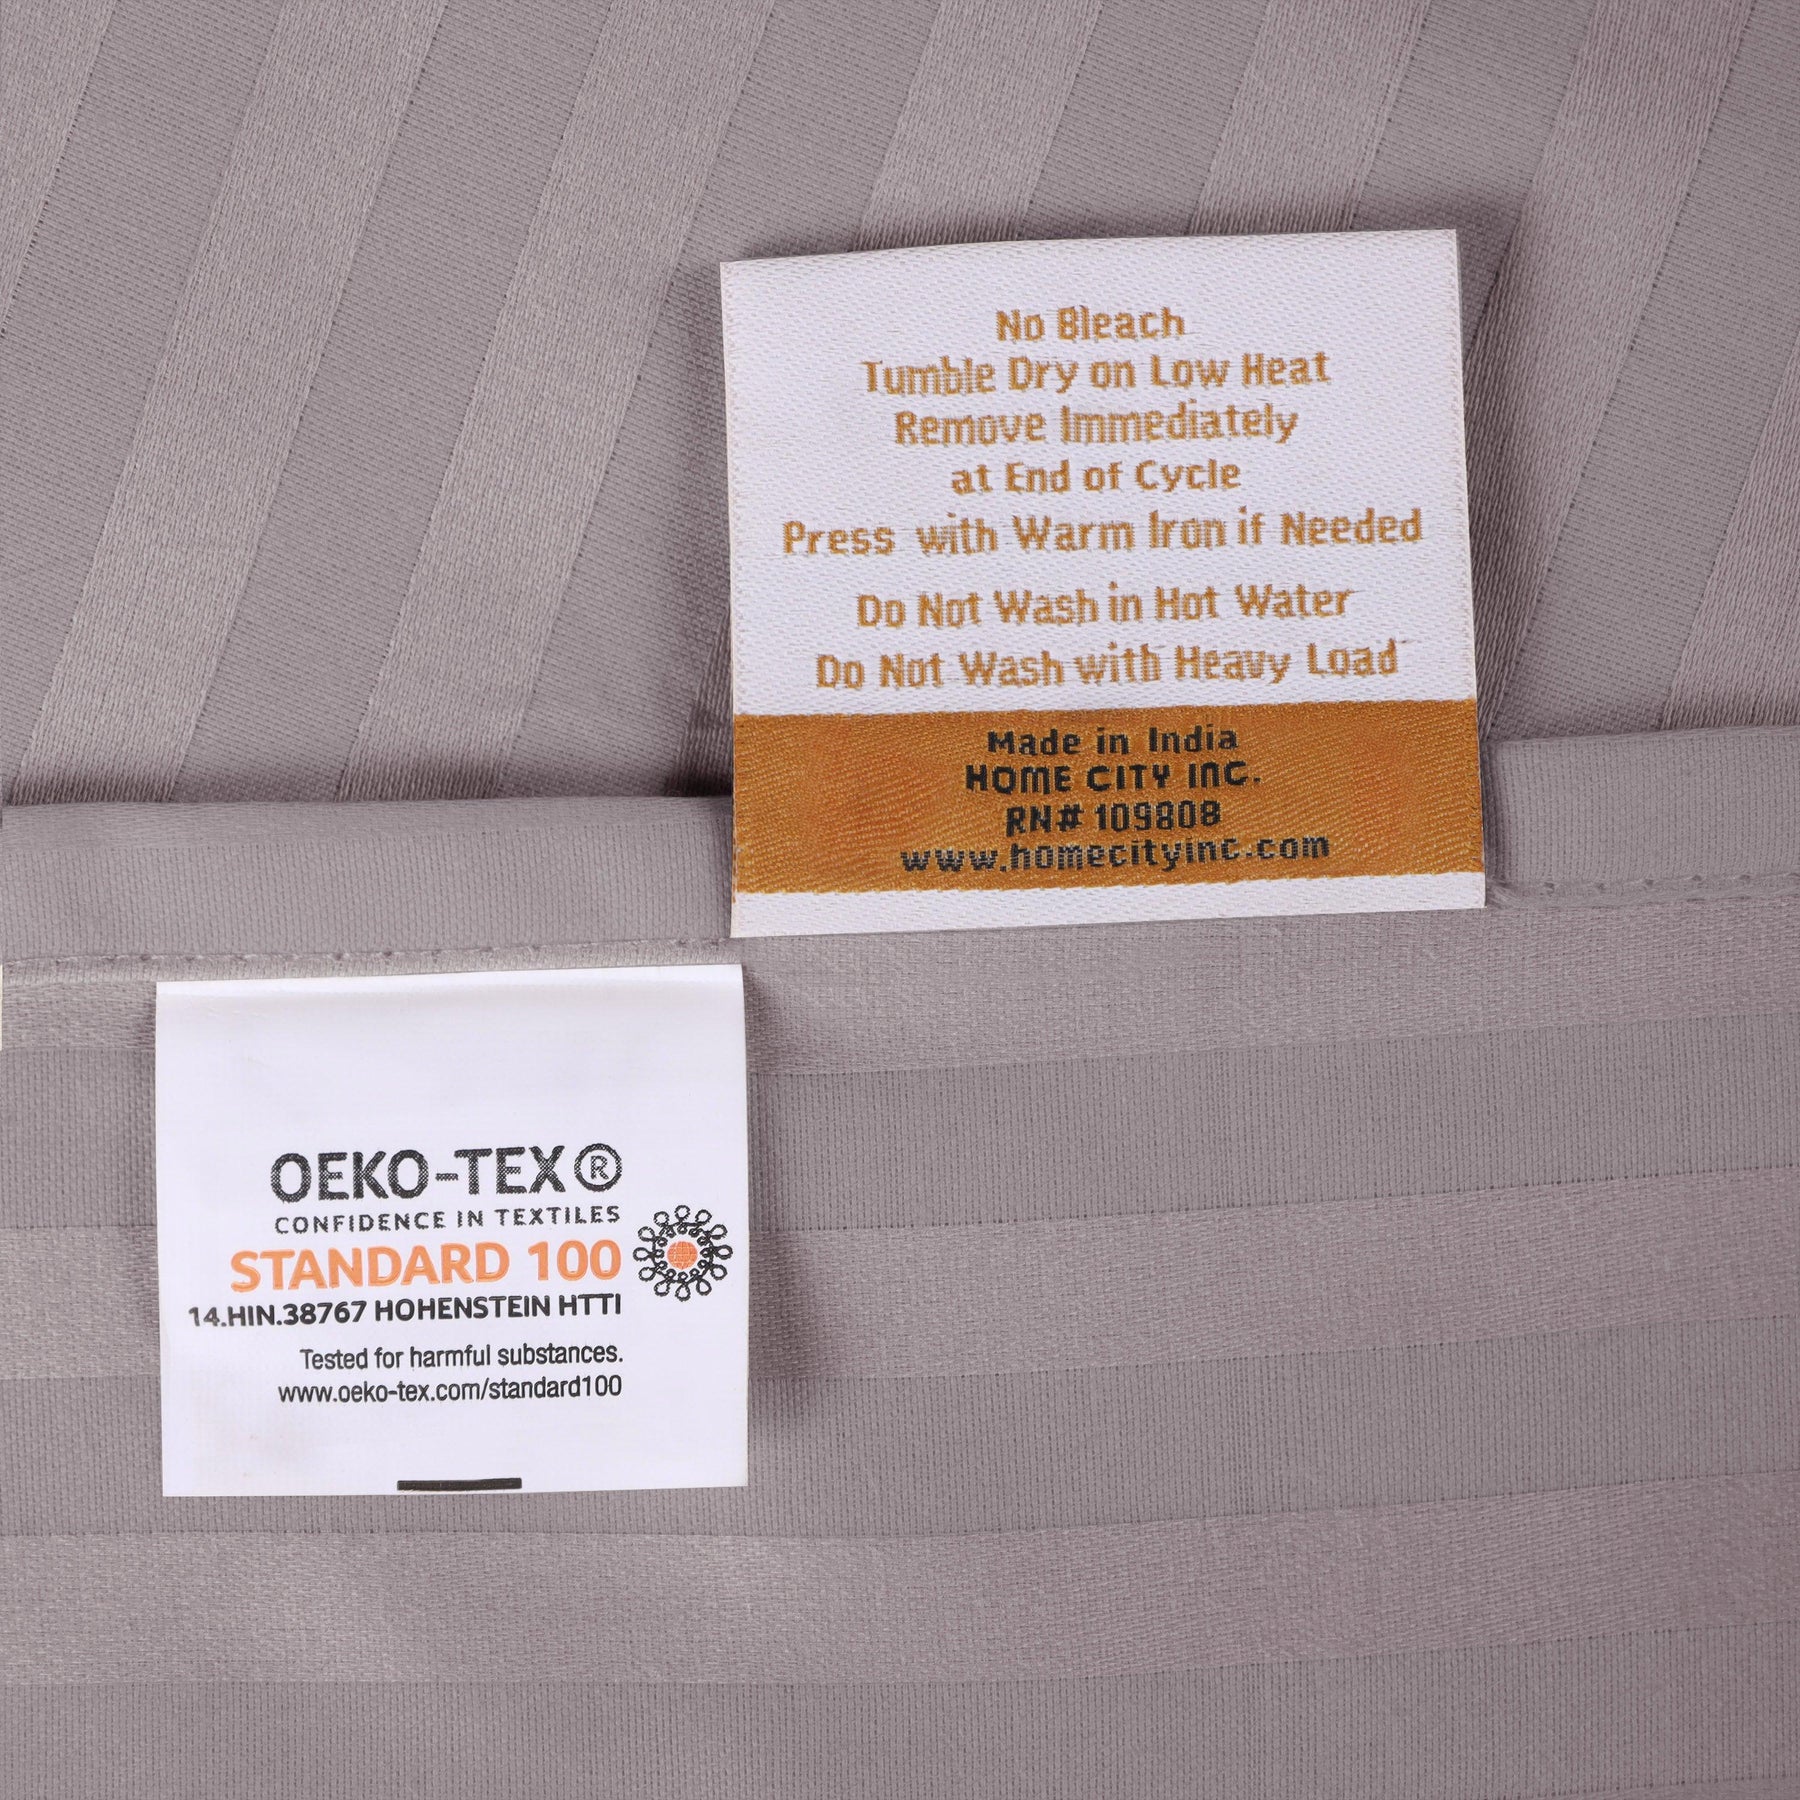 Superior 300 Thread Count Premium Egyptian Cotton Stripe Sheet Set - Grey